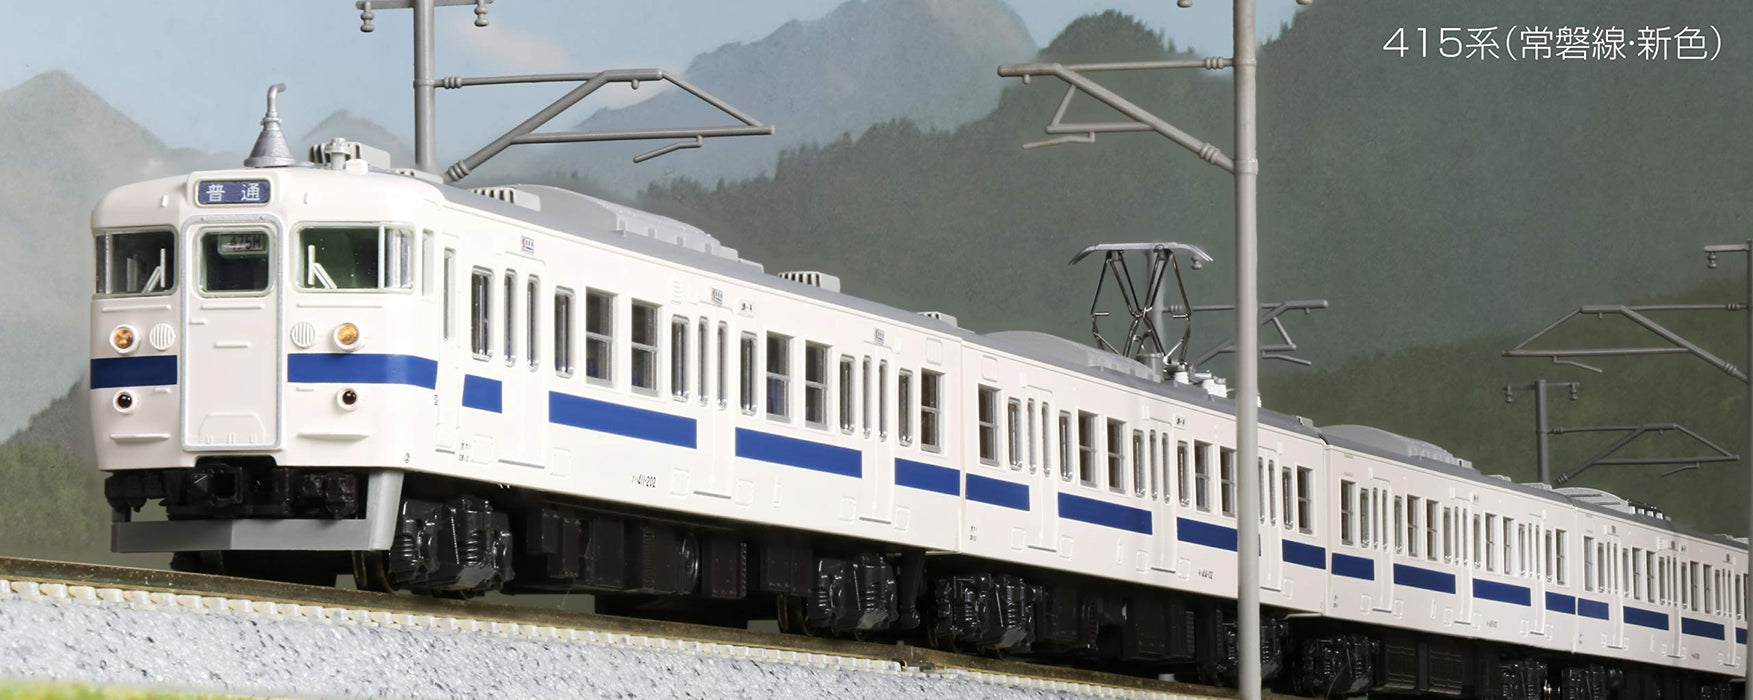 Kato N Gauge 415 Series Joban Line 4-Car Set 10-1537 Train modèle ferroviaire nouvelle couleur